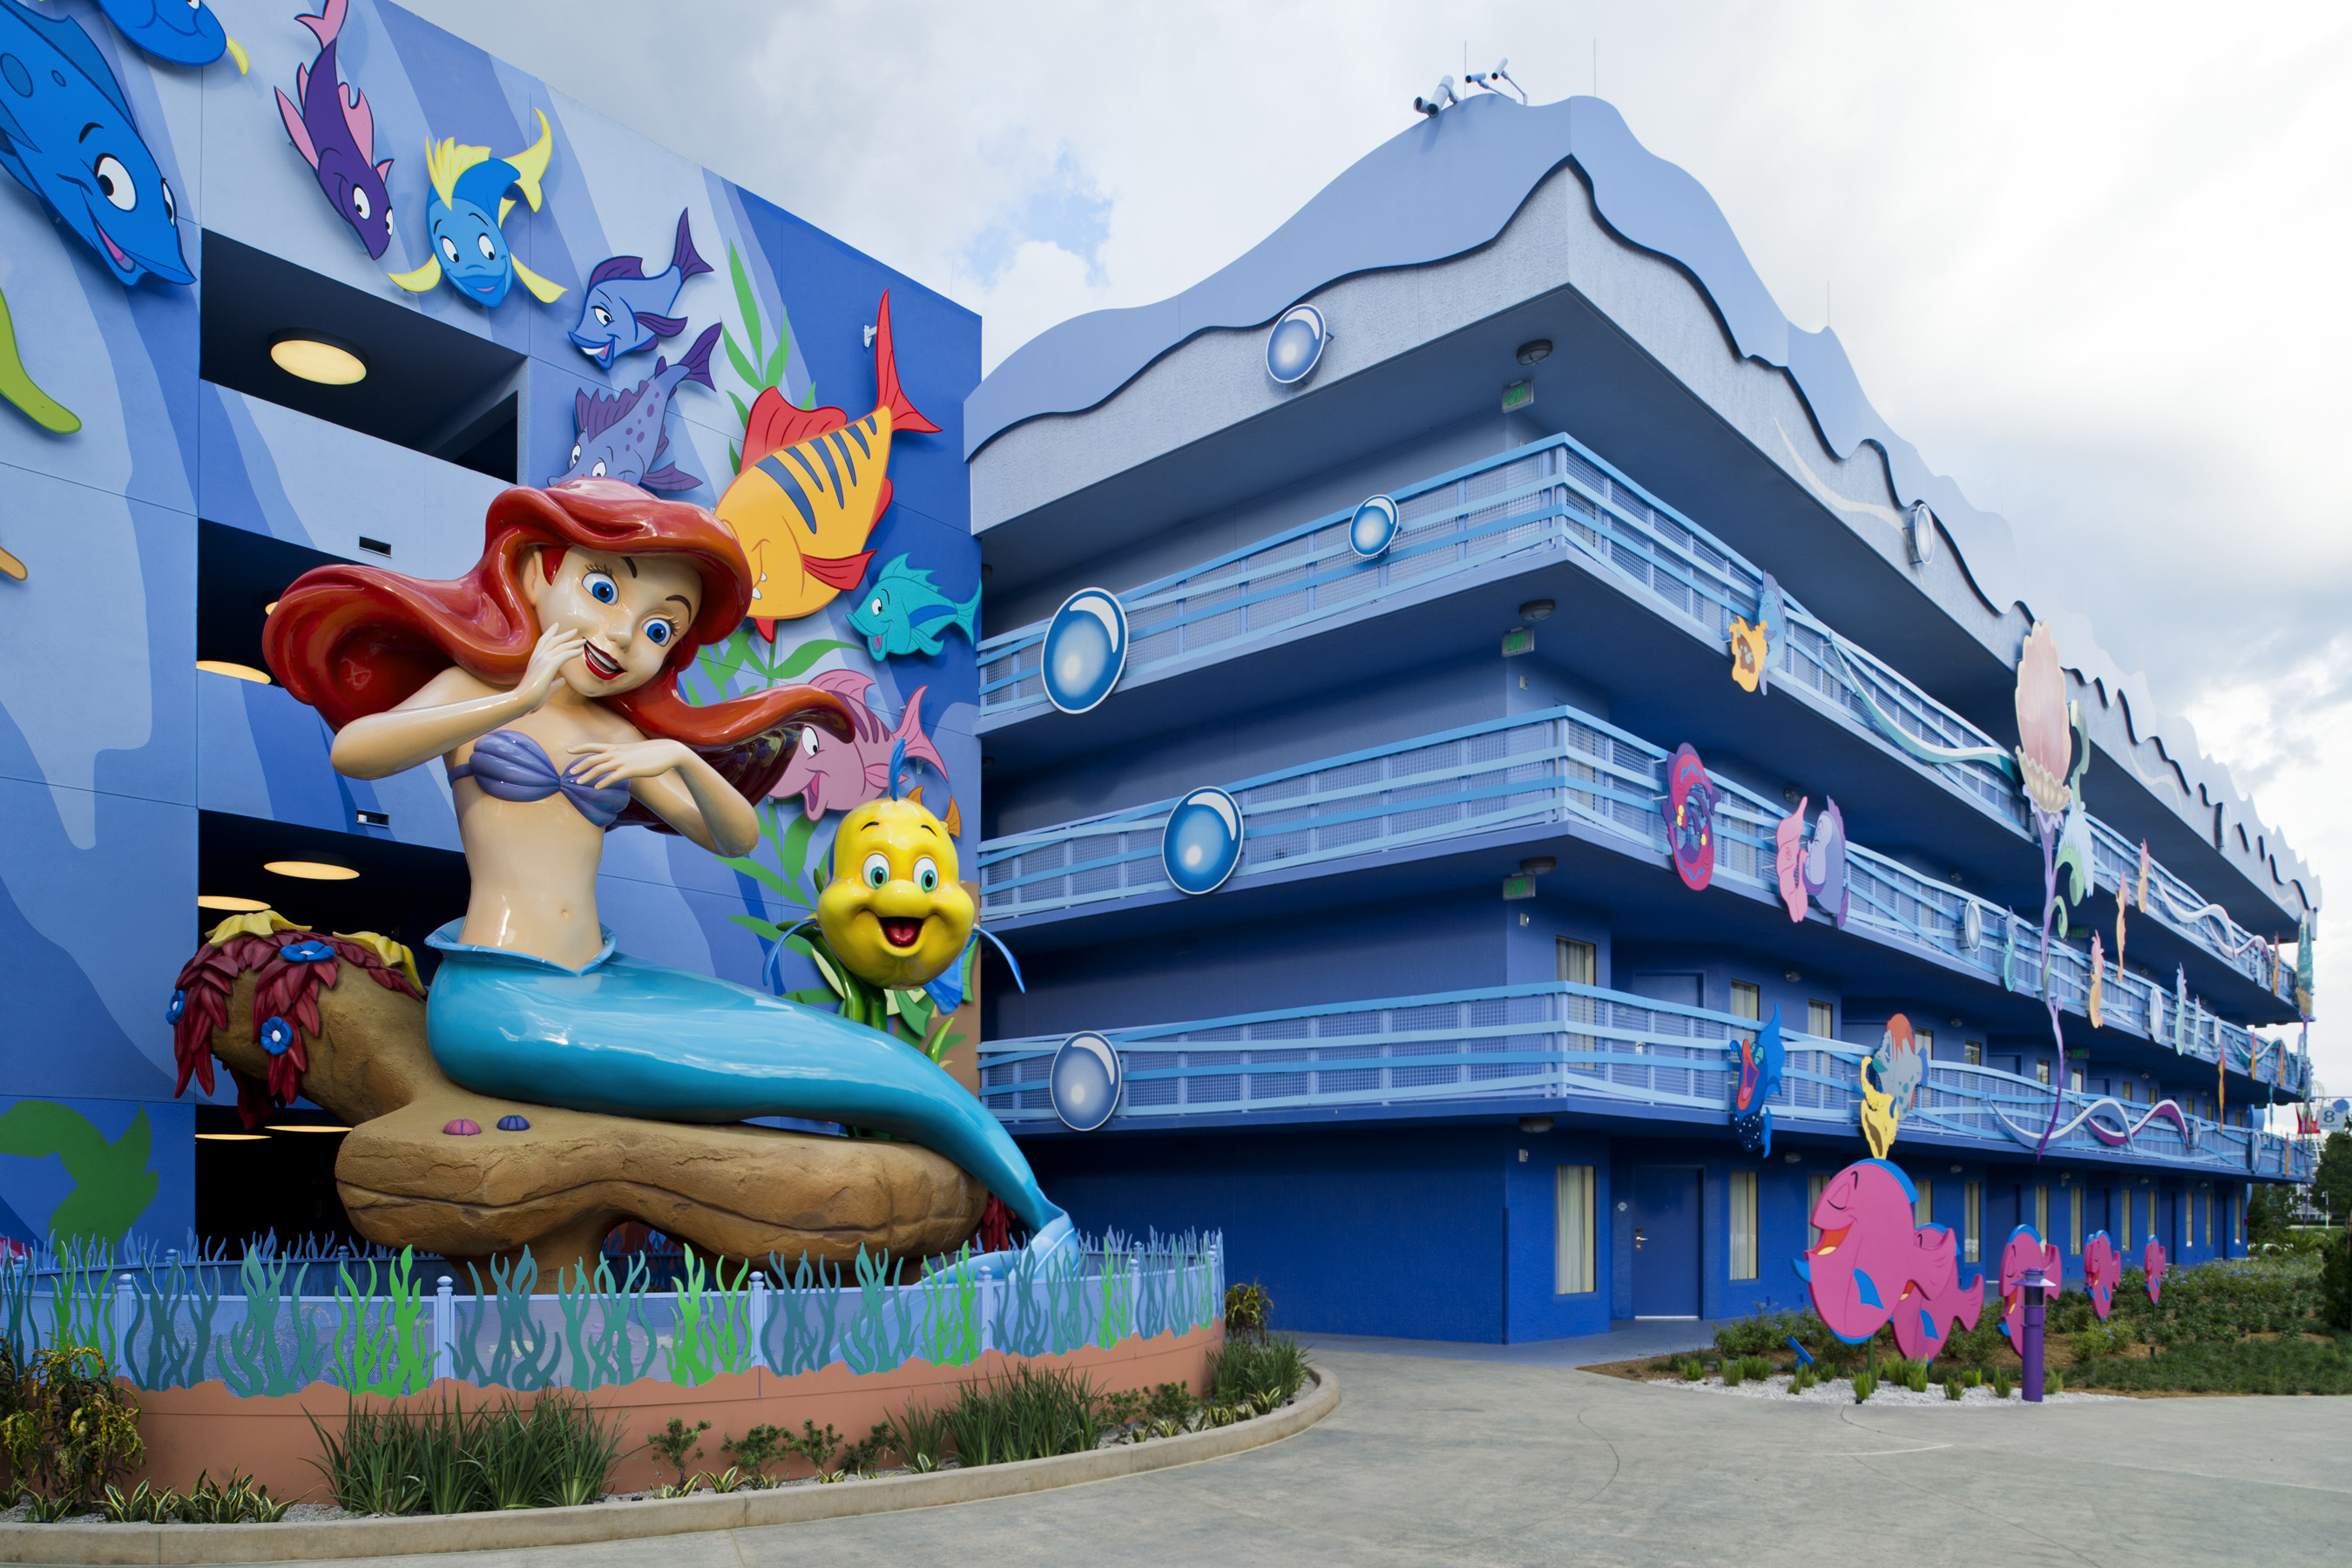 La ltima vez que Disney sum un gran parque temtico a su complejo de Orlando fue en 1998, cuando se estren el parque Animal Kingdom.